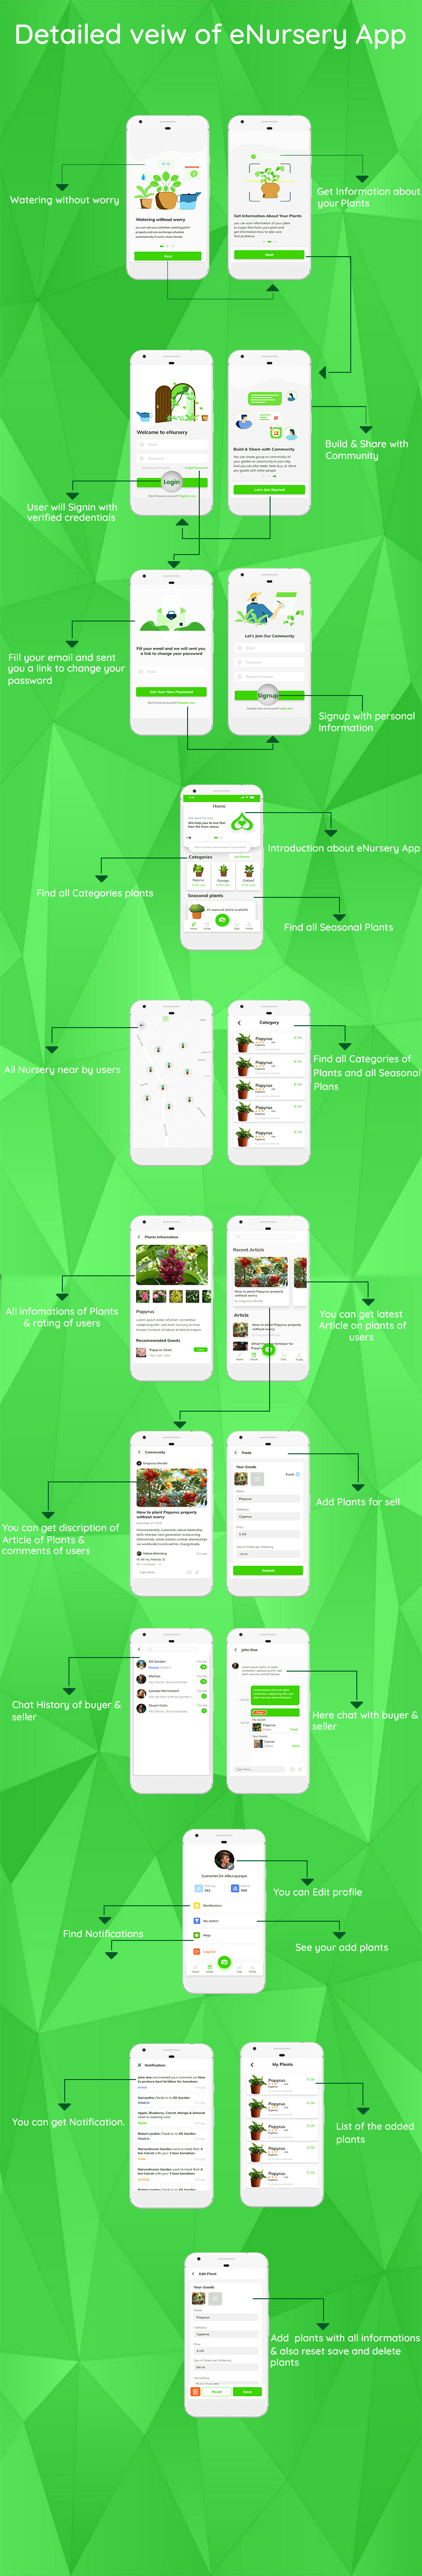 e-Nursery - iOS (iPhone) app for Nursery - 5